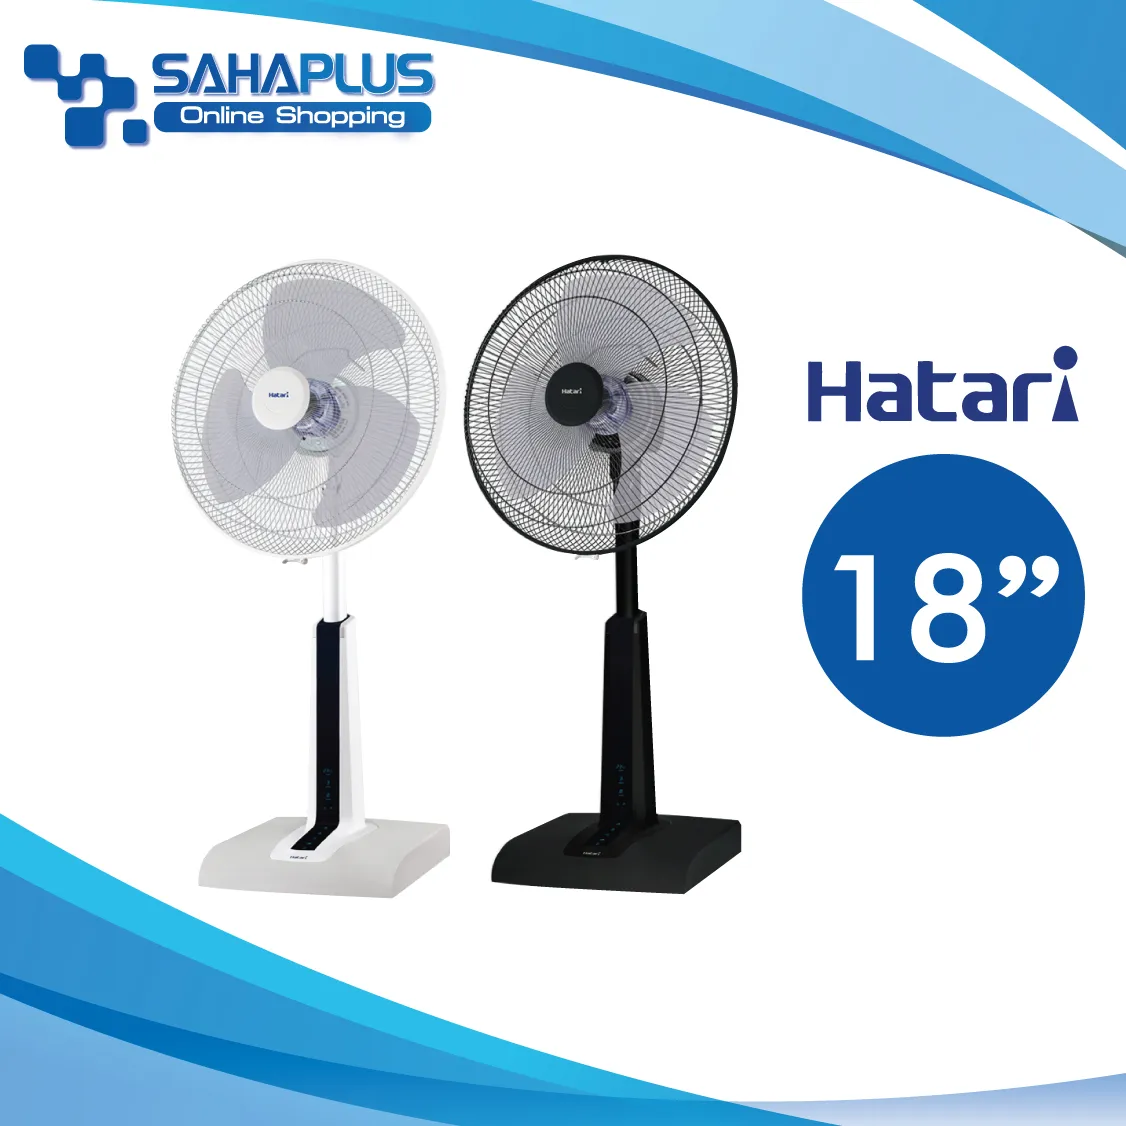 พัดลม ฮาตาริ Hatari 18 นิ้ว ปรับระดับได้ 6 ระดับ มีรีโมท รุ่น Slide Smart L1 (รับประกันสินค้า 3 ปี)